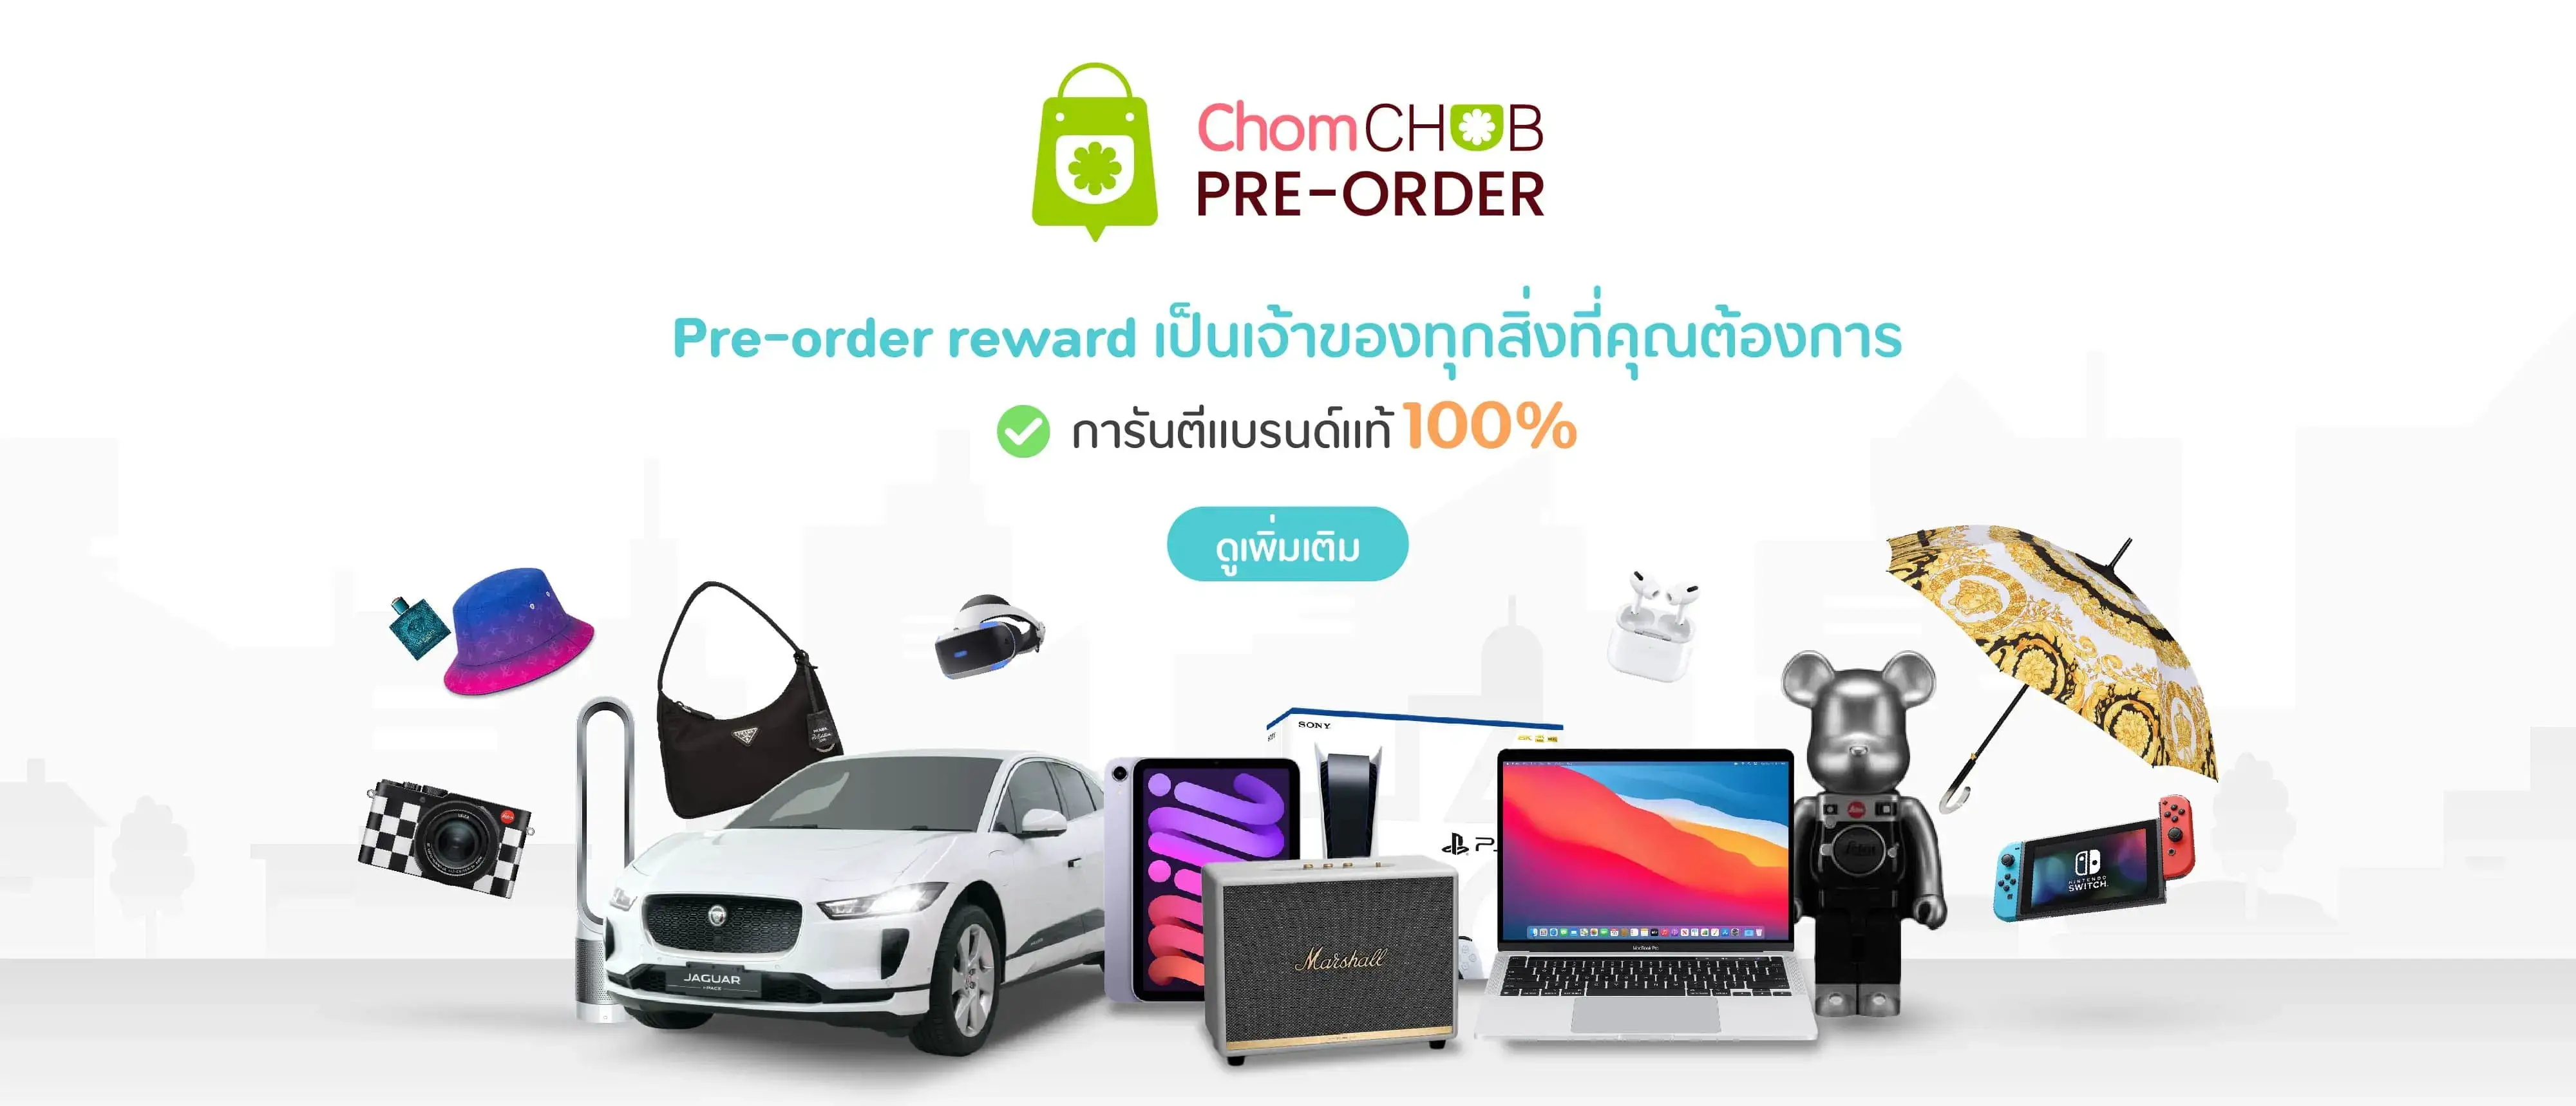 chomchob-pre-order-reward-large